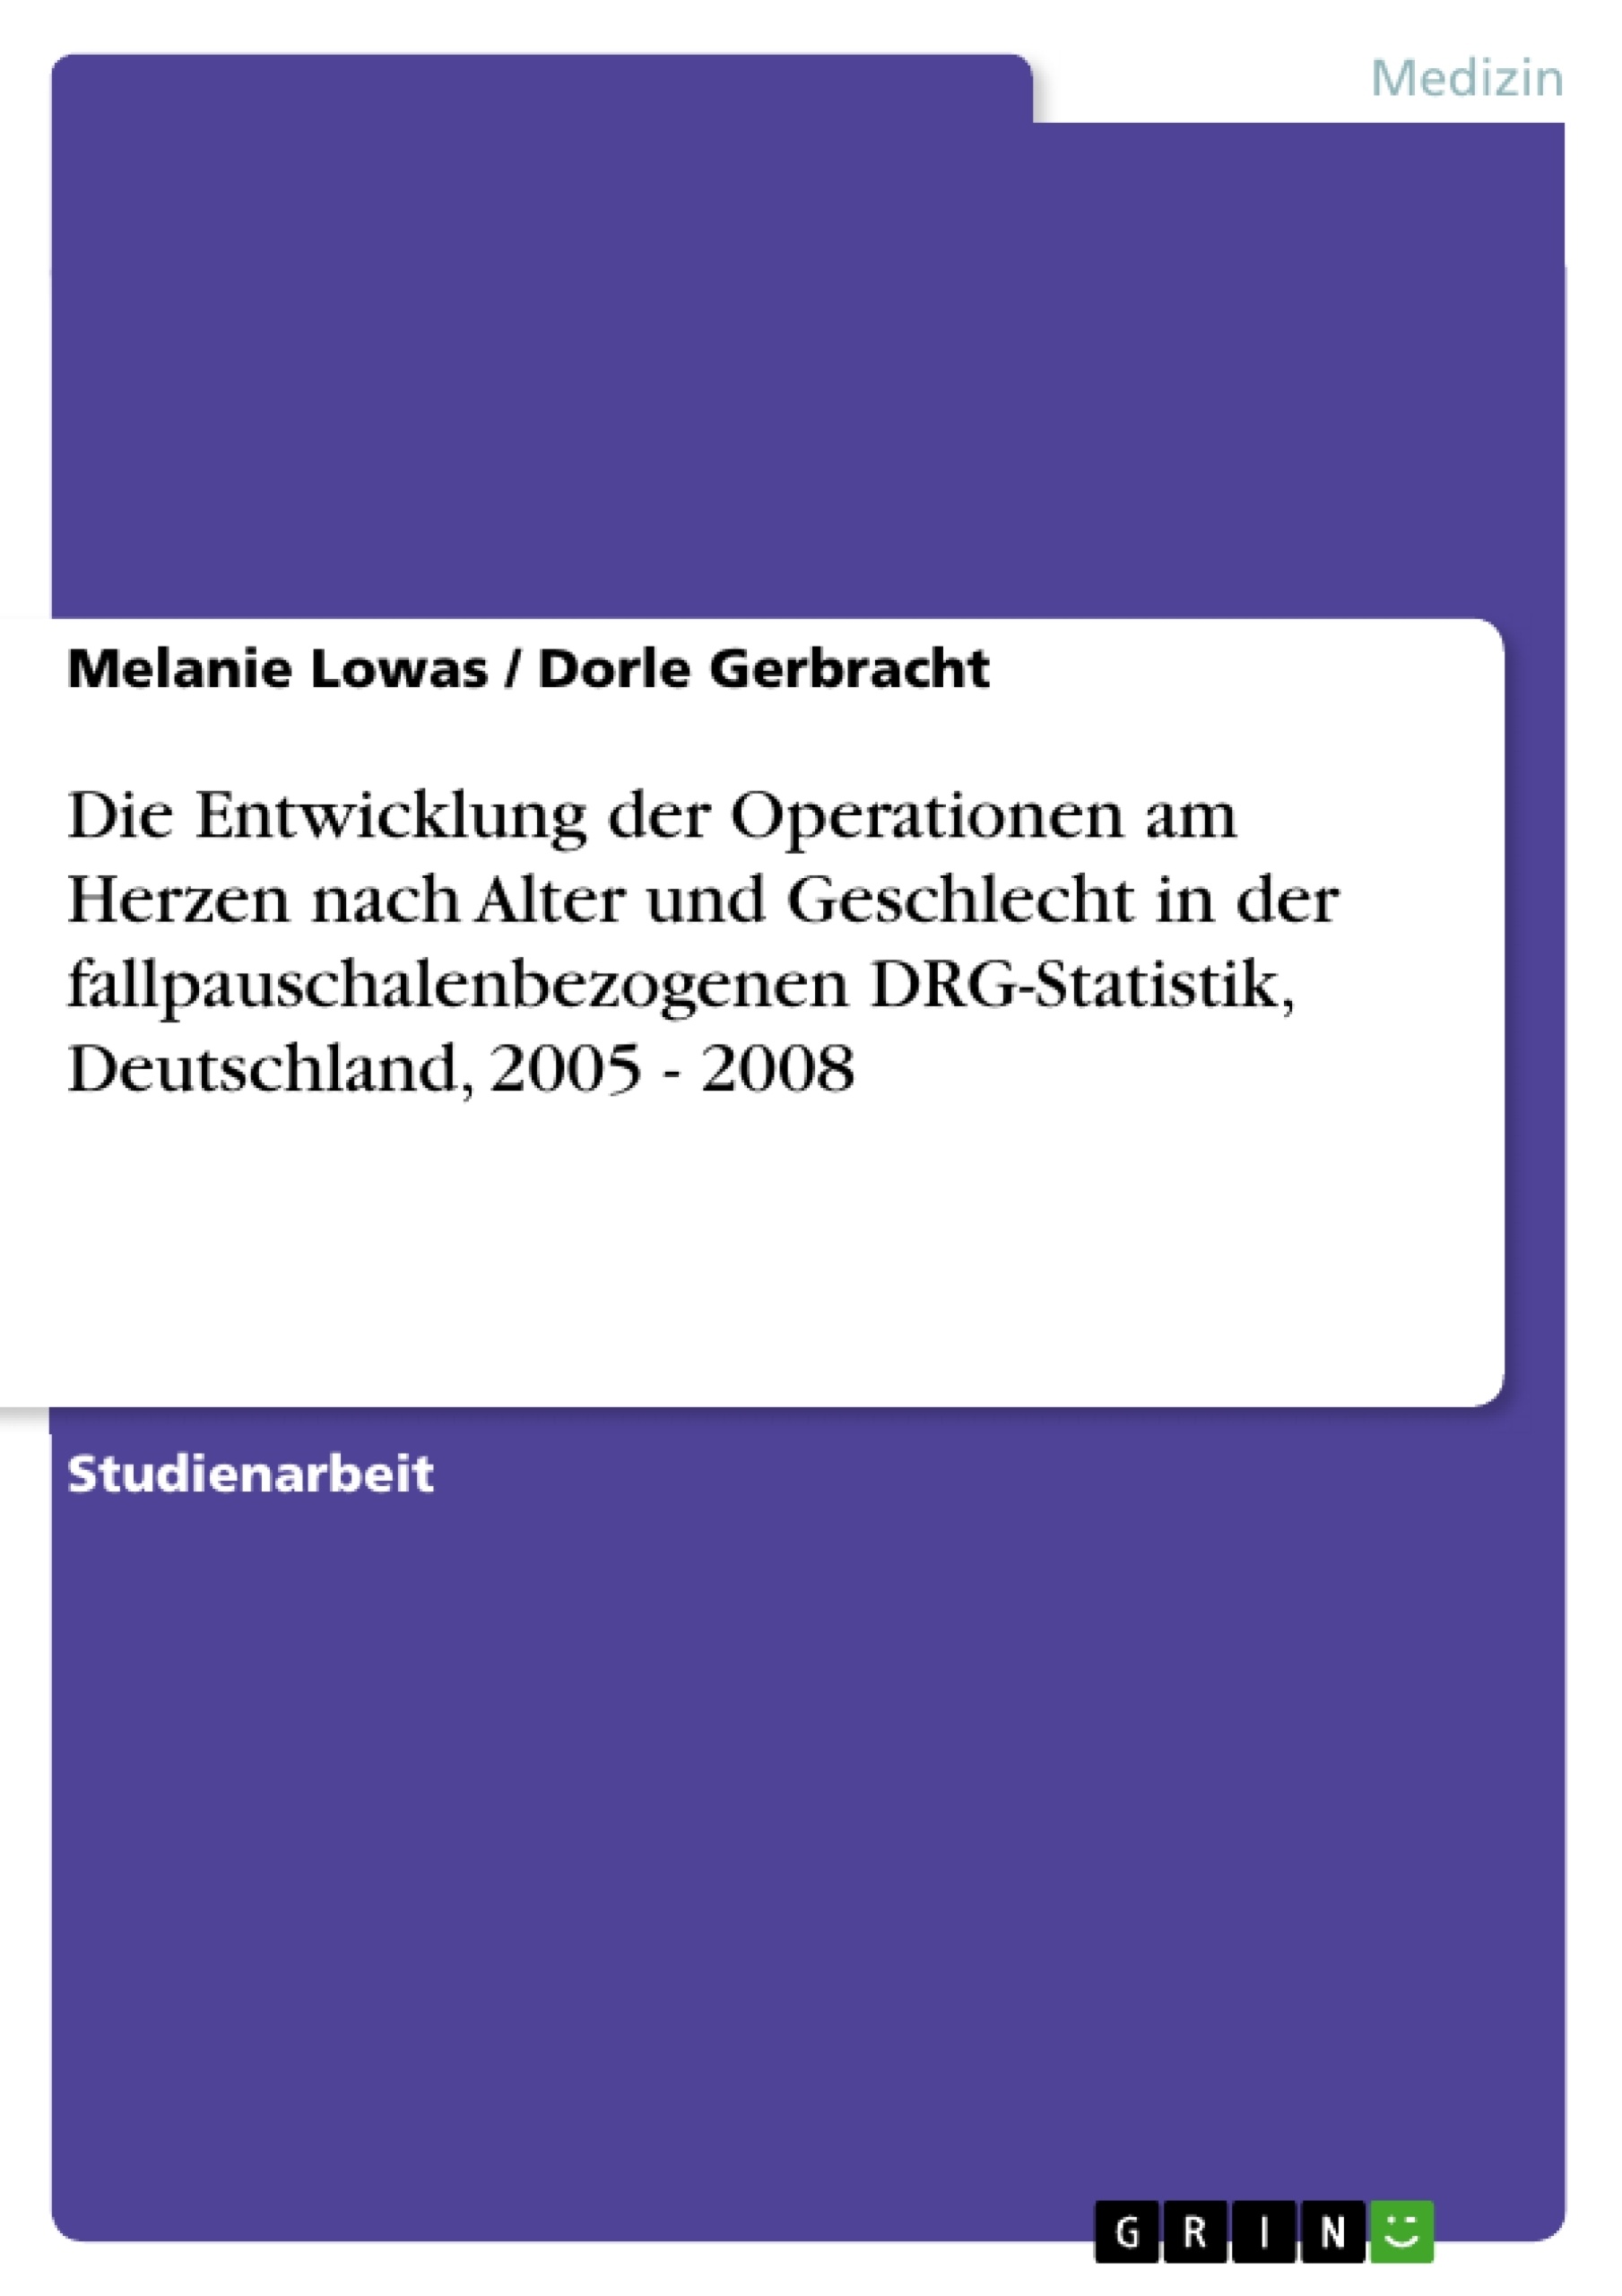 Título: Die Entwicklung der Operationen am Herzen nach Alter und Geschlecht in der fallpauschalenbezogenen DRG-Statistik, Deutschland, 2005 - 2008